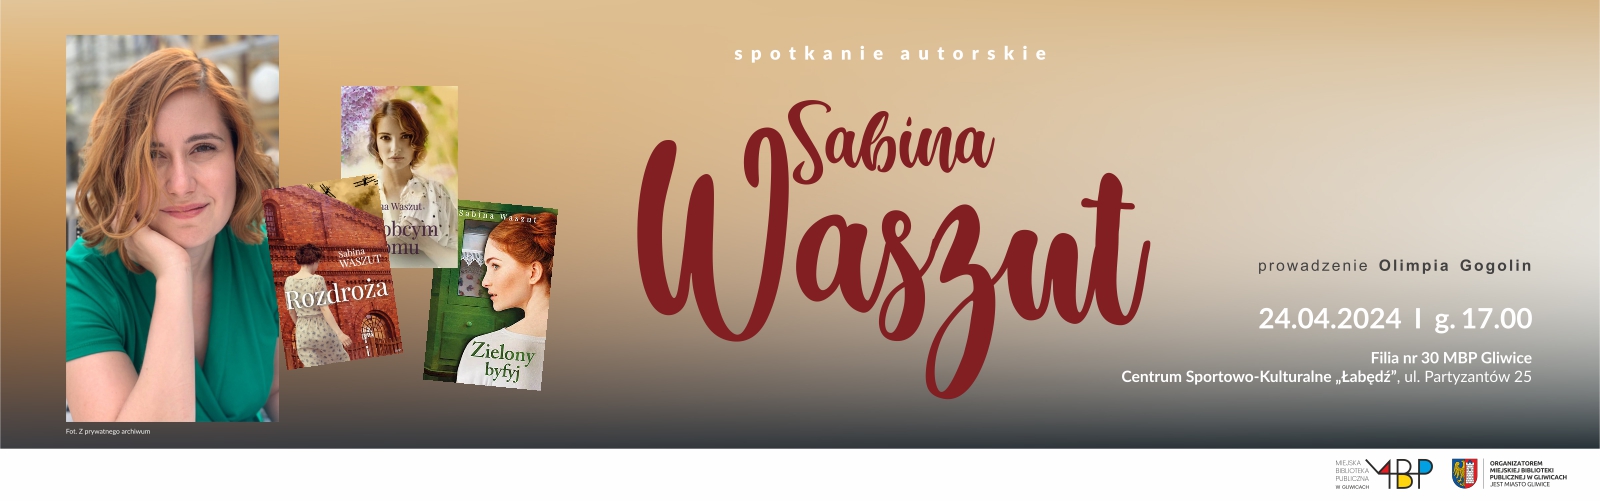 Sabina Waszut – spotkanie autorskie